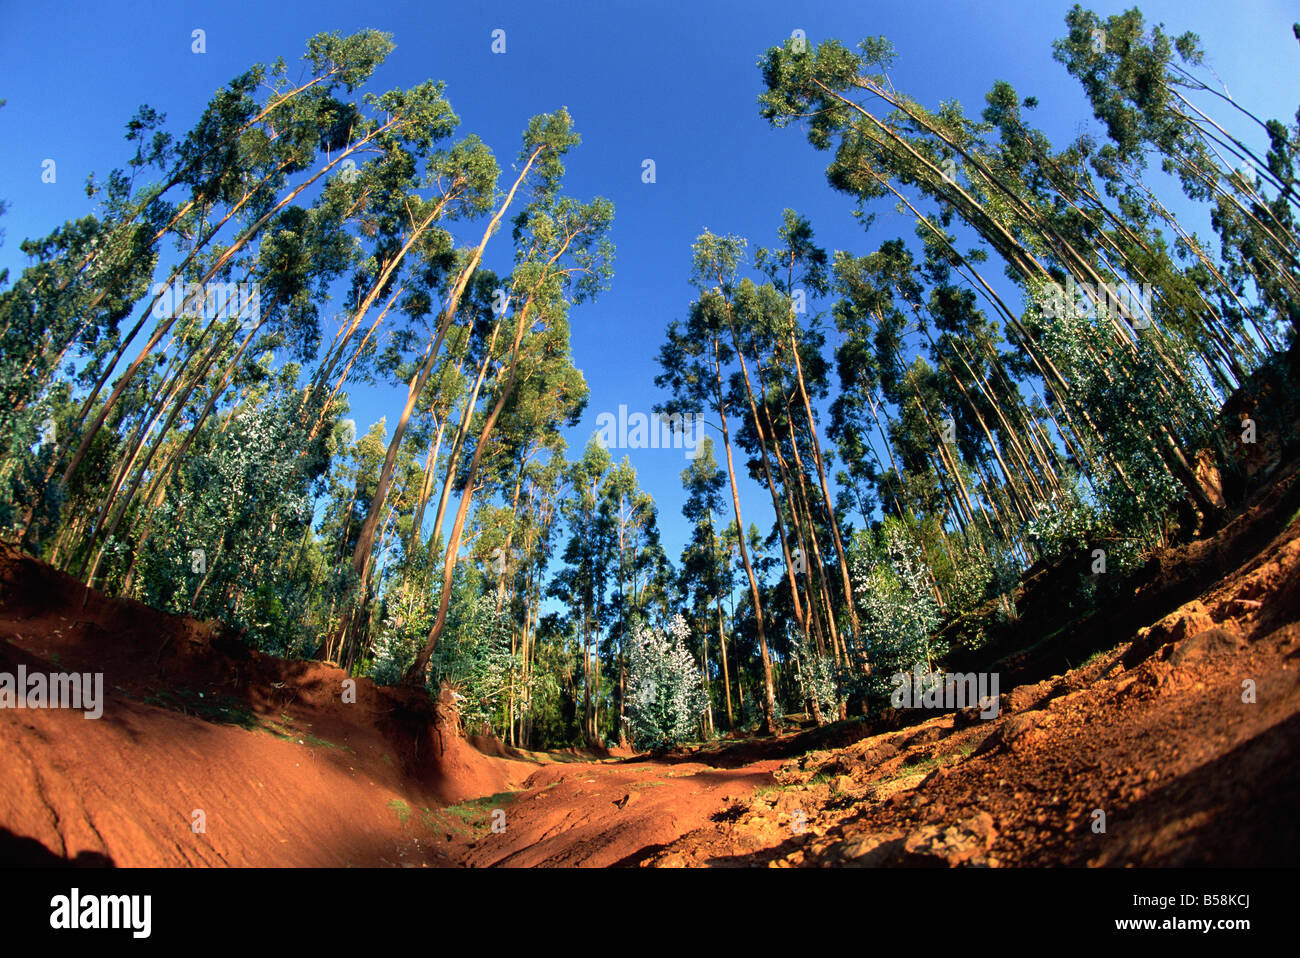 Le géant de la forêt d'eucalyptus Addis Ababa Ethiopie Afrique Banque D'Images